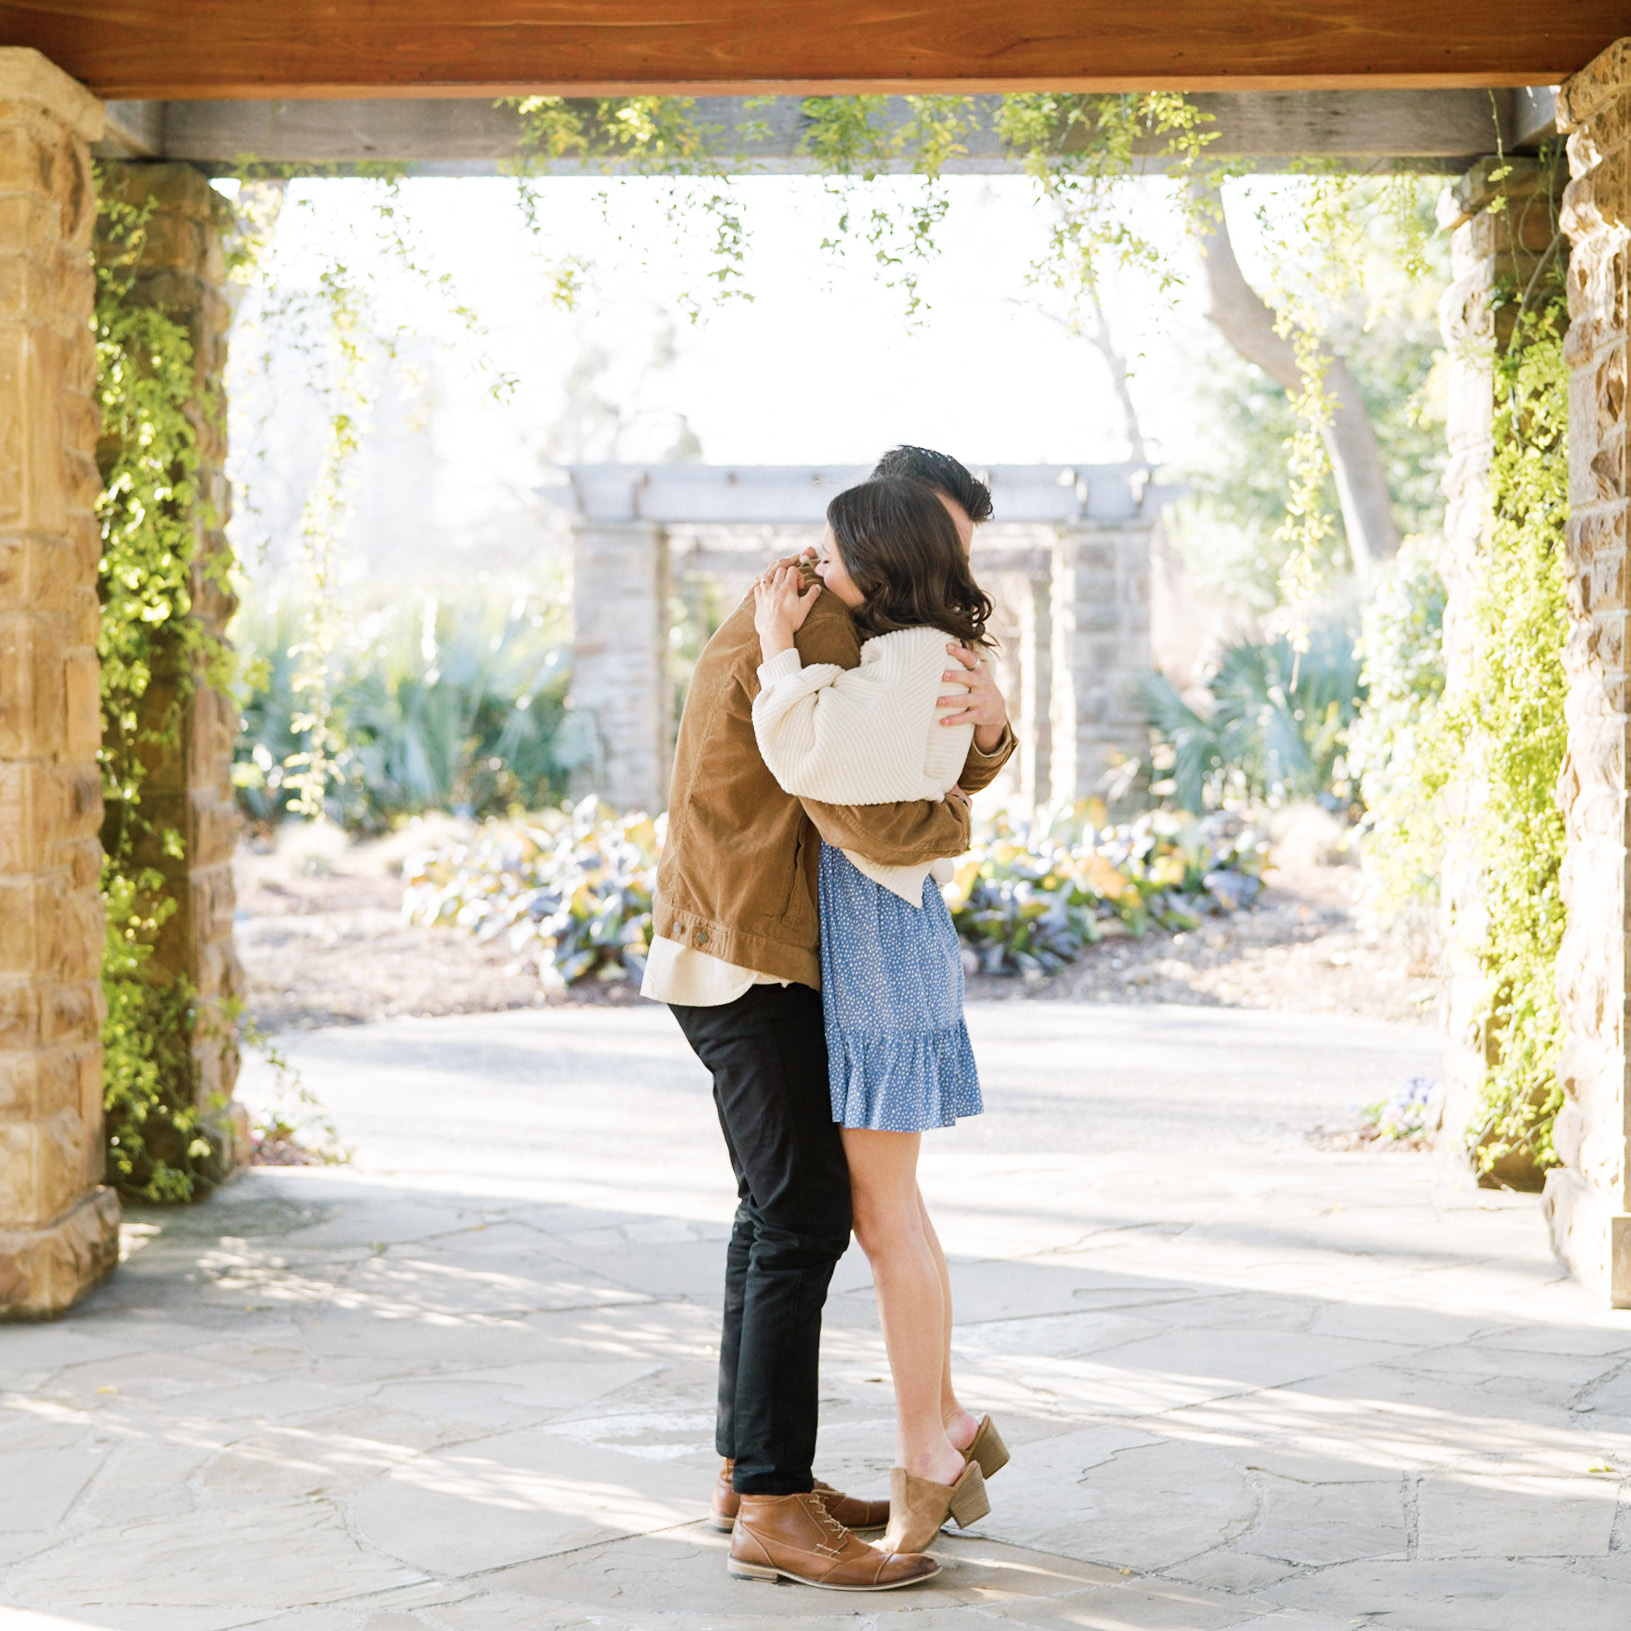 Botanical Proposal | Botanical Garden Proposal | How He Asked | Botanical Garden Photoshoot | Proposal Ideas | Dallas, Texas | Texas Wedding Photographer | Dallas Wedding Photographer